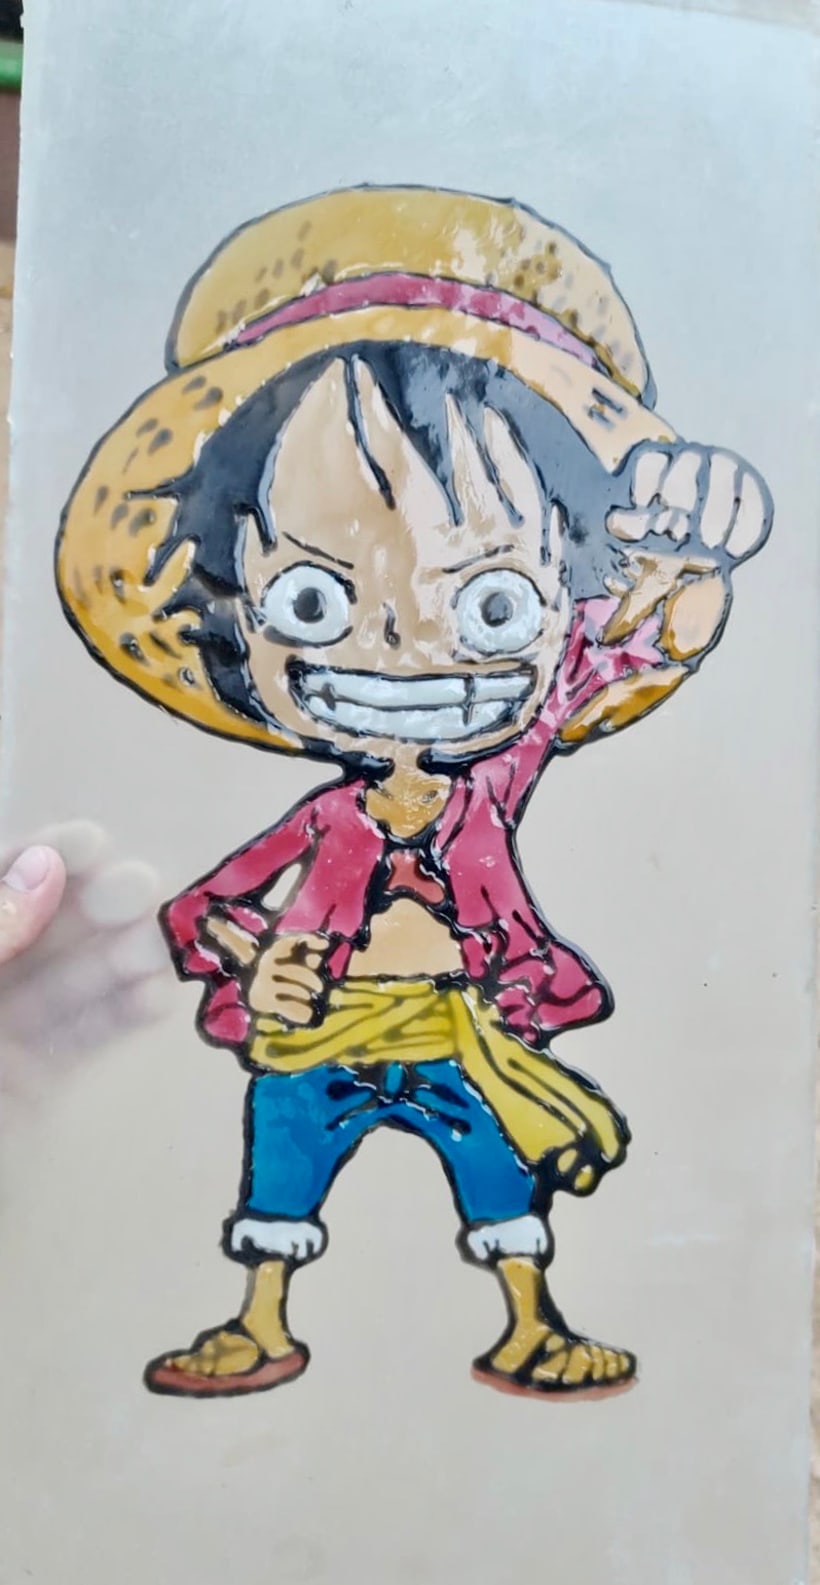 Vitral manga Luffy sử dụng bề mặt kính để tạo ra các bức tranh mang tính nghệ thuật cao. Hình ảnh nhân vật Luffy trong One Piece được chuyển đổi thành một tác phẩm đầy màu sắc và sáng tạo. Hãy cùng trải nghiệm sự pha trộn giữa manga và nghệ thuật trên trang vẽ này!